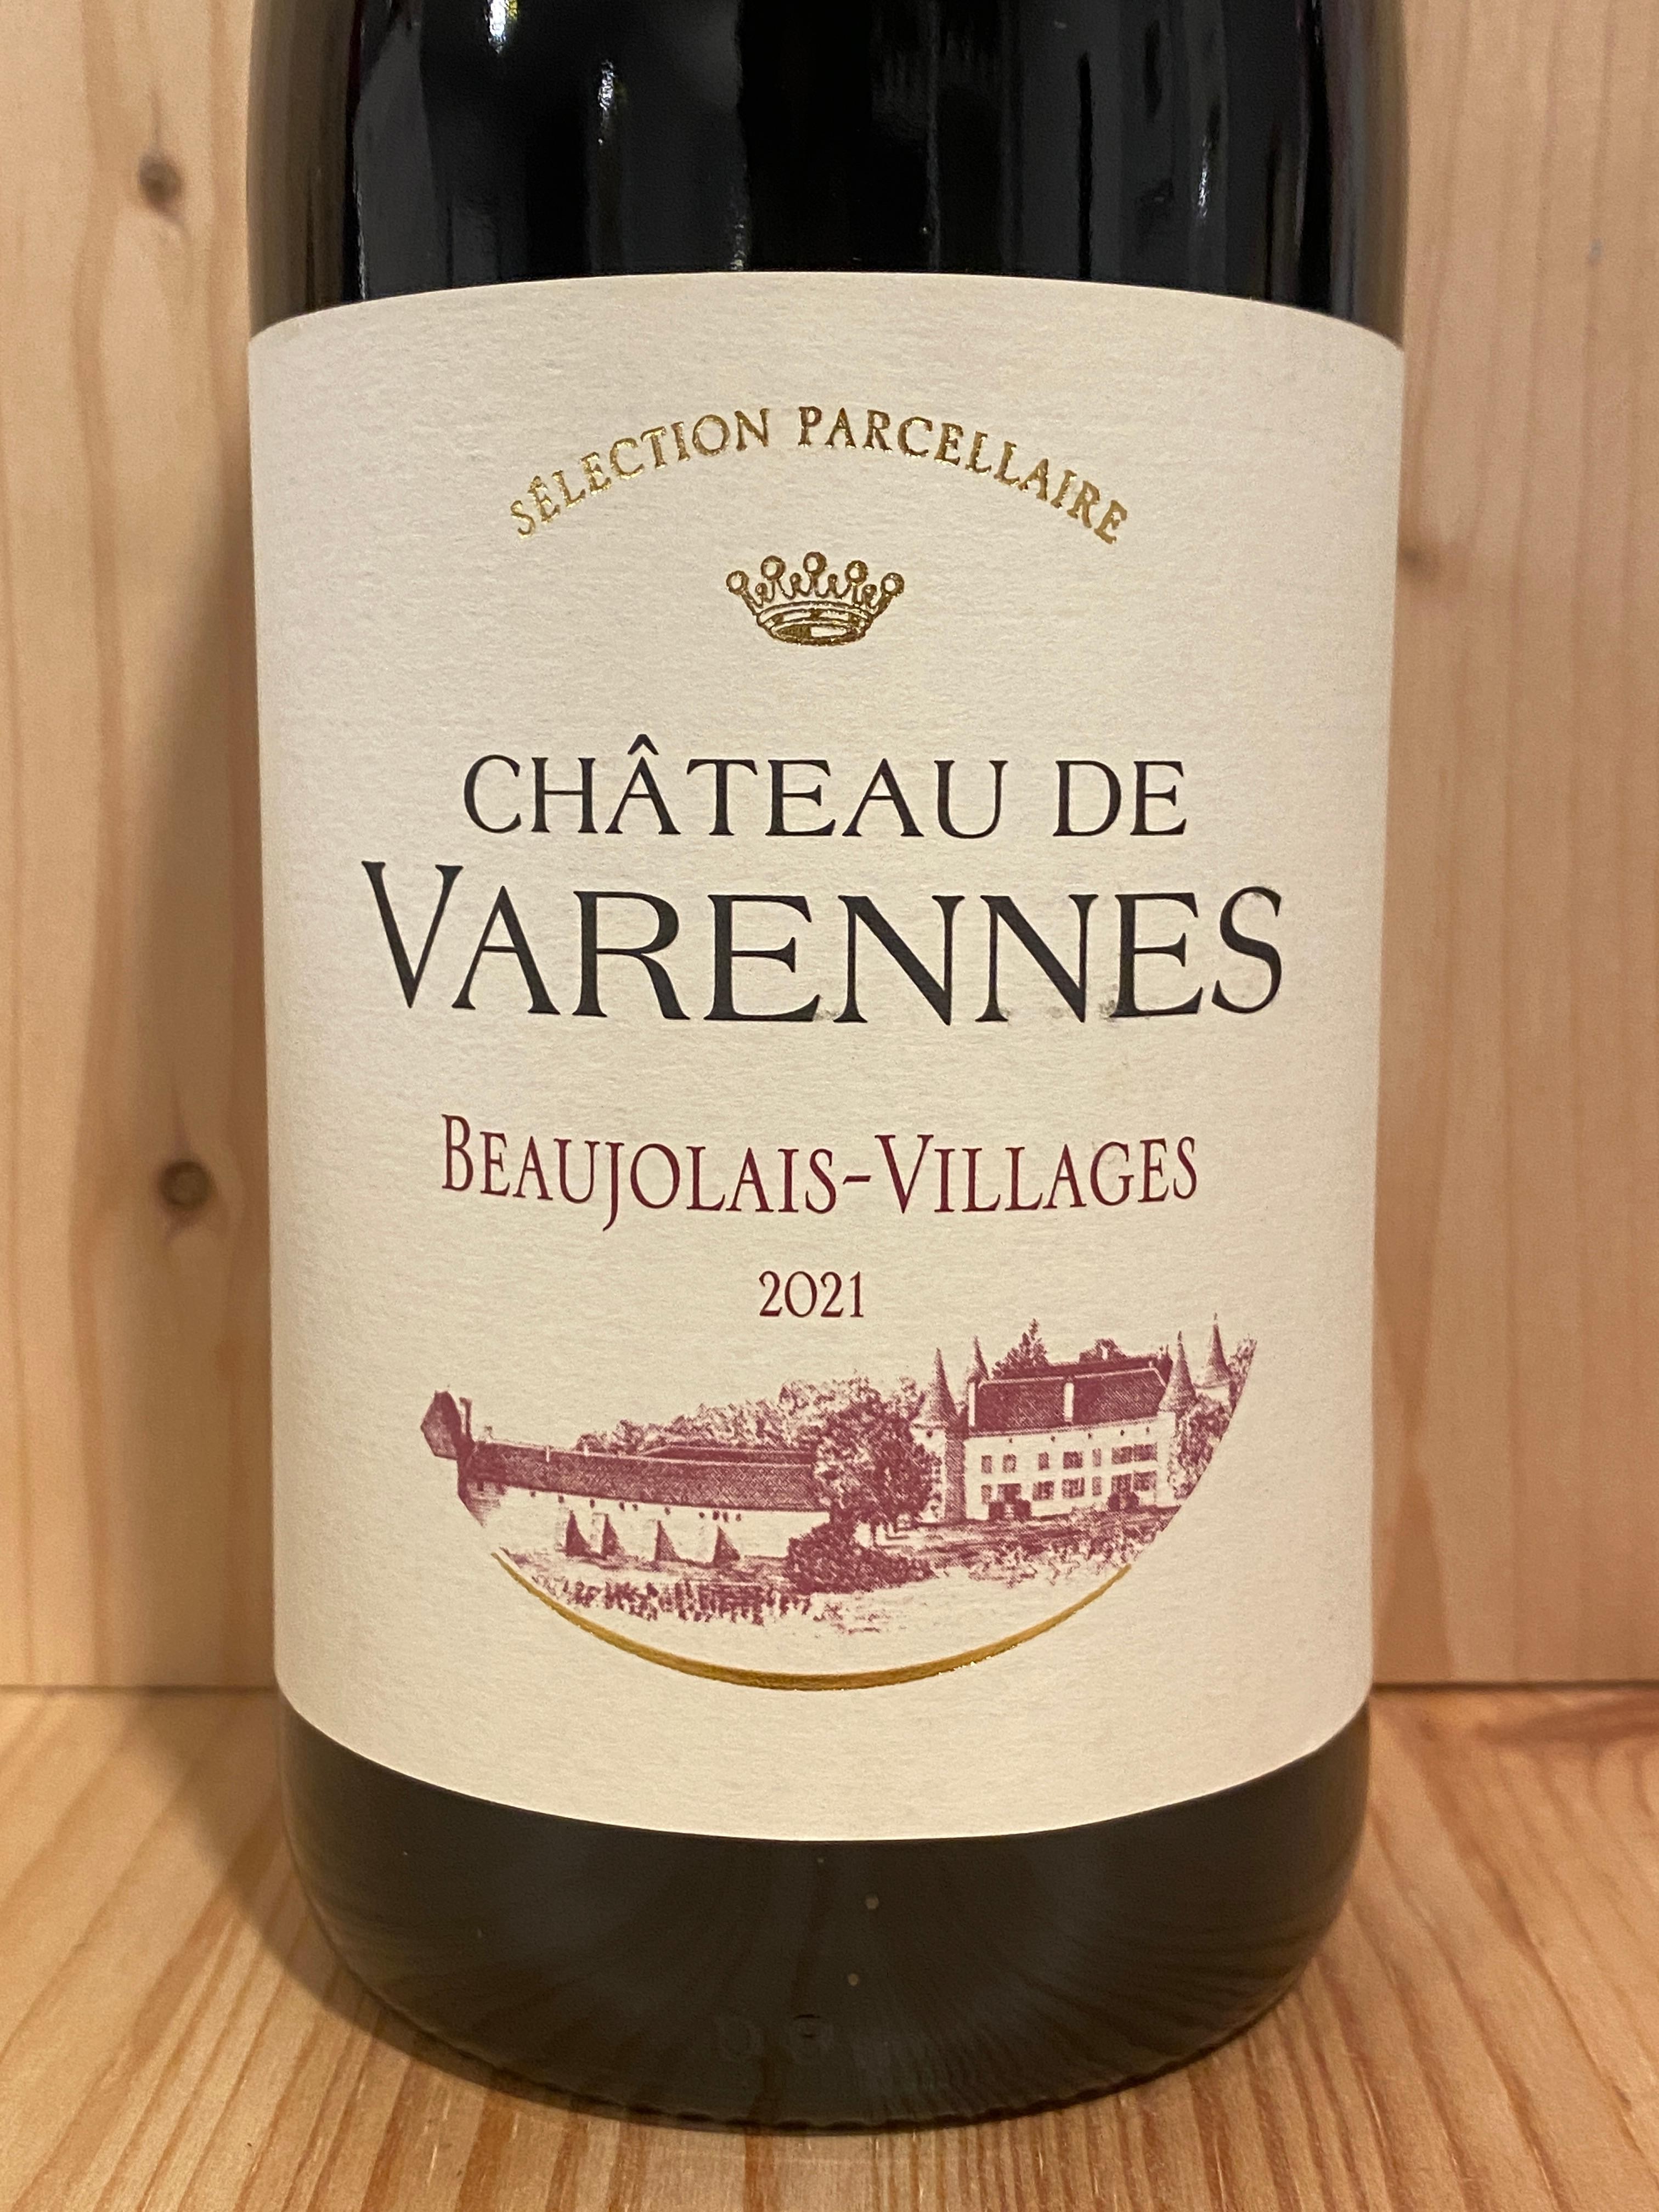 Ch. de Varennes "Sélection Parcellaire" Beaujolais-Villages 2021: Burgundy, France